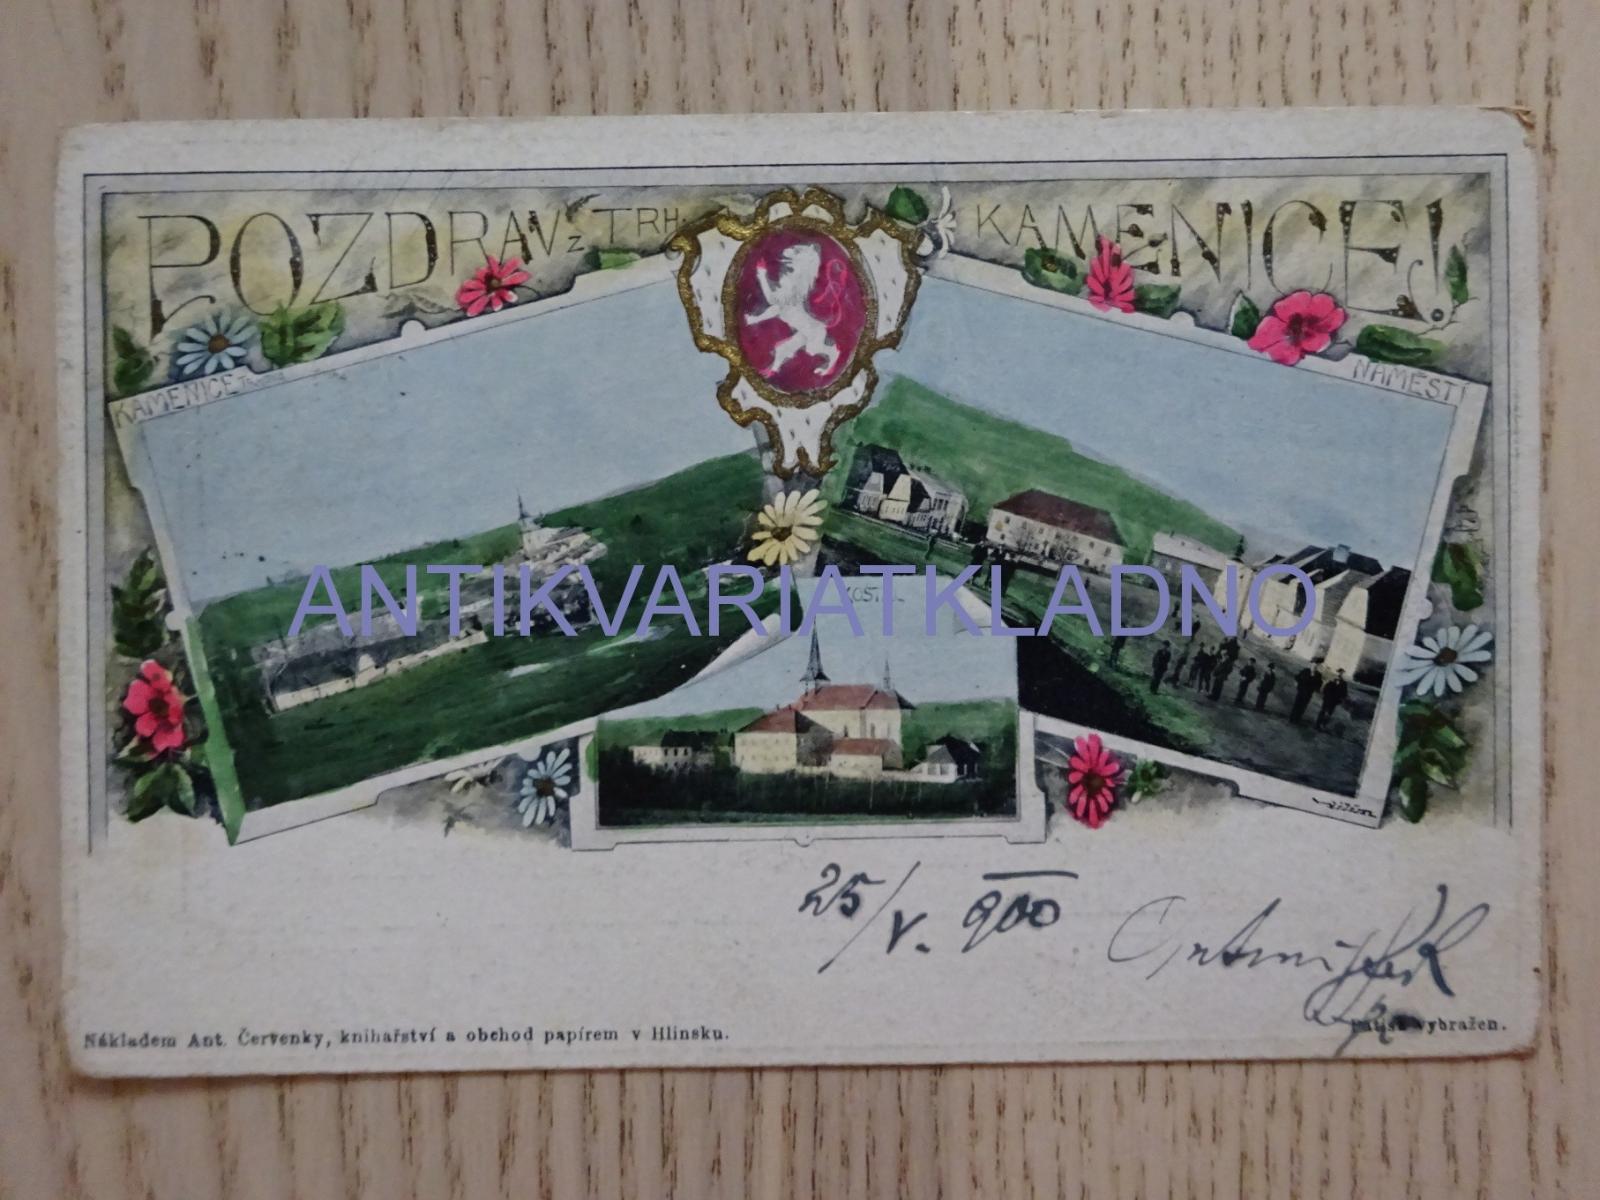 TRHOVÁ KAMENICA, OKR. CHRUDIM, 1900 - Pohľadnice miestopis